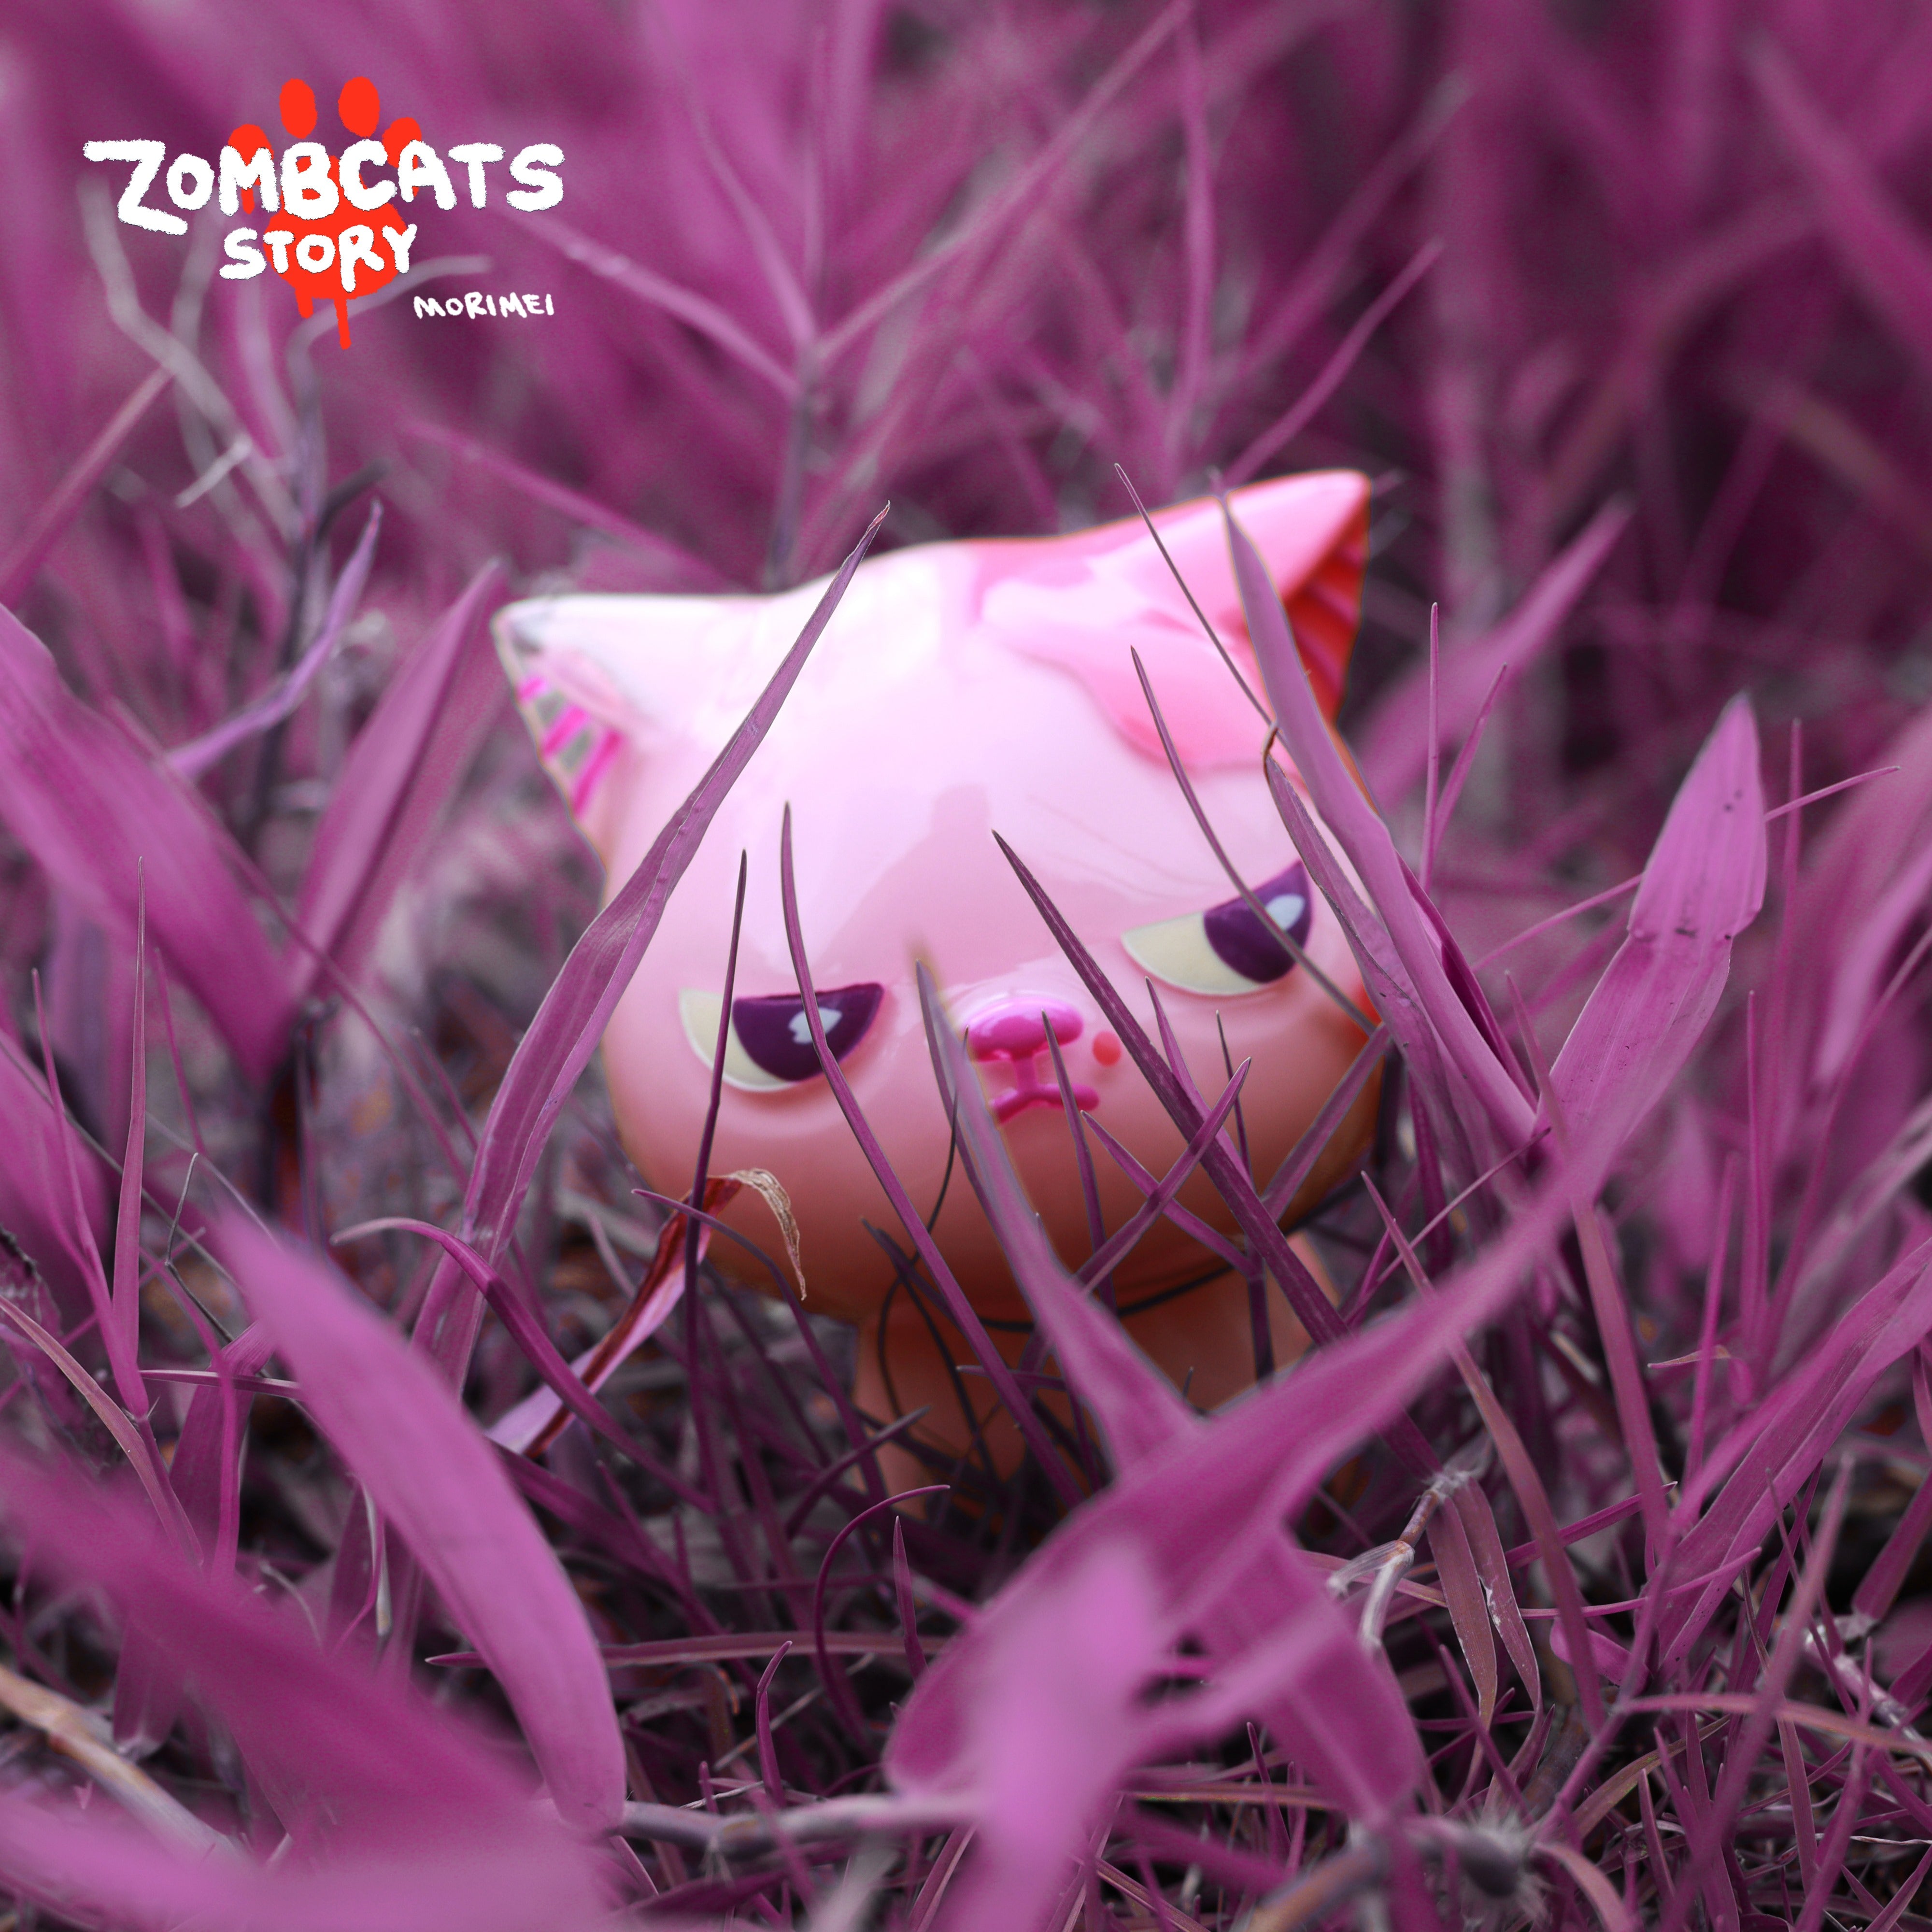 Zombcat - Kanhi by Morimei